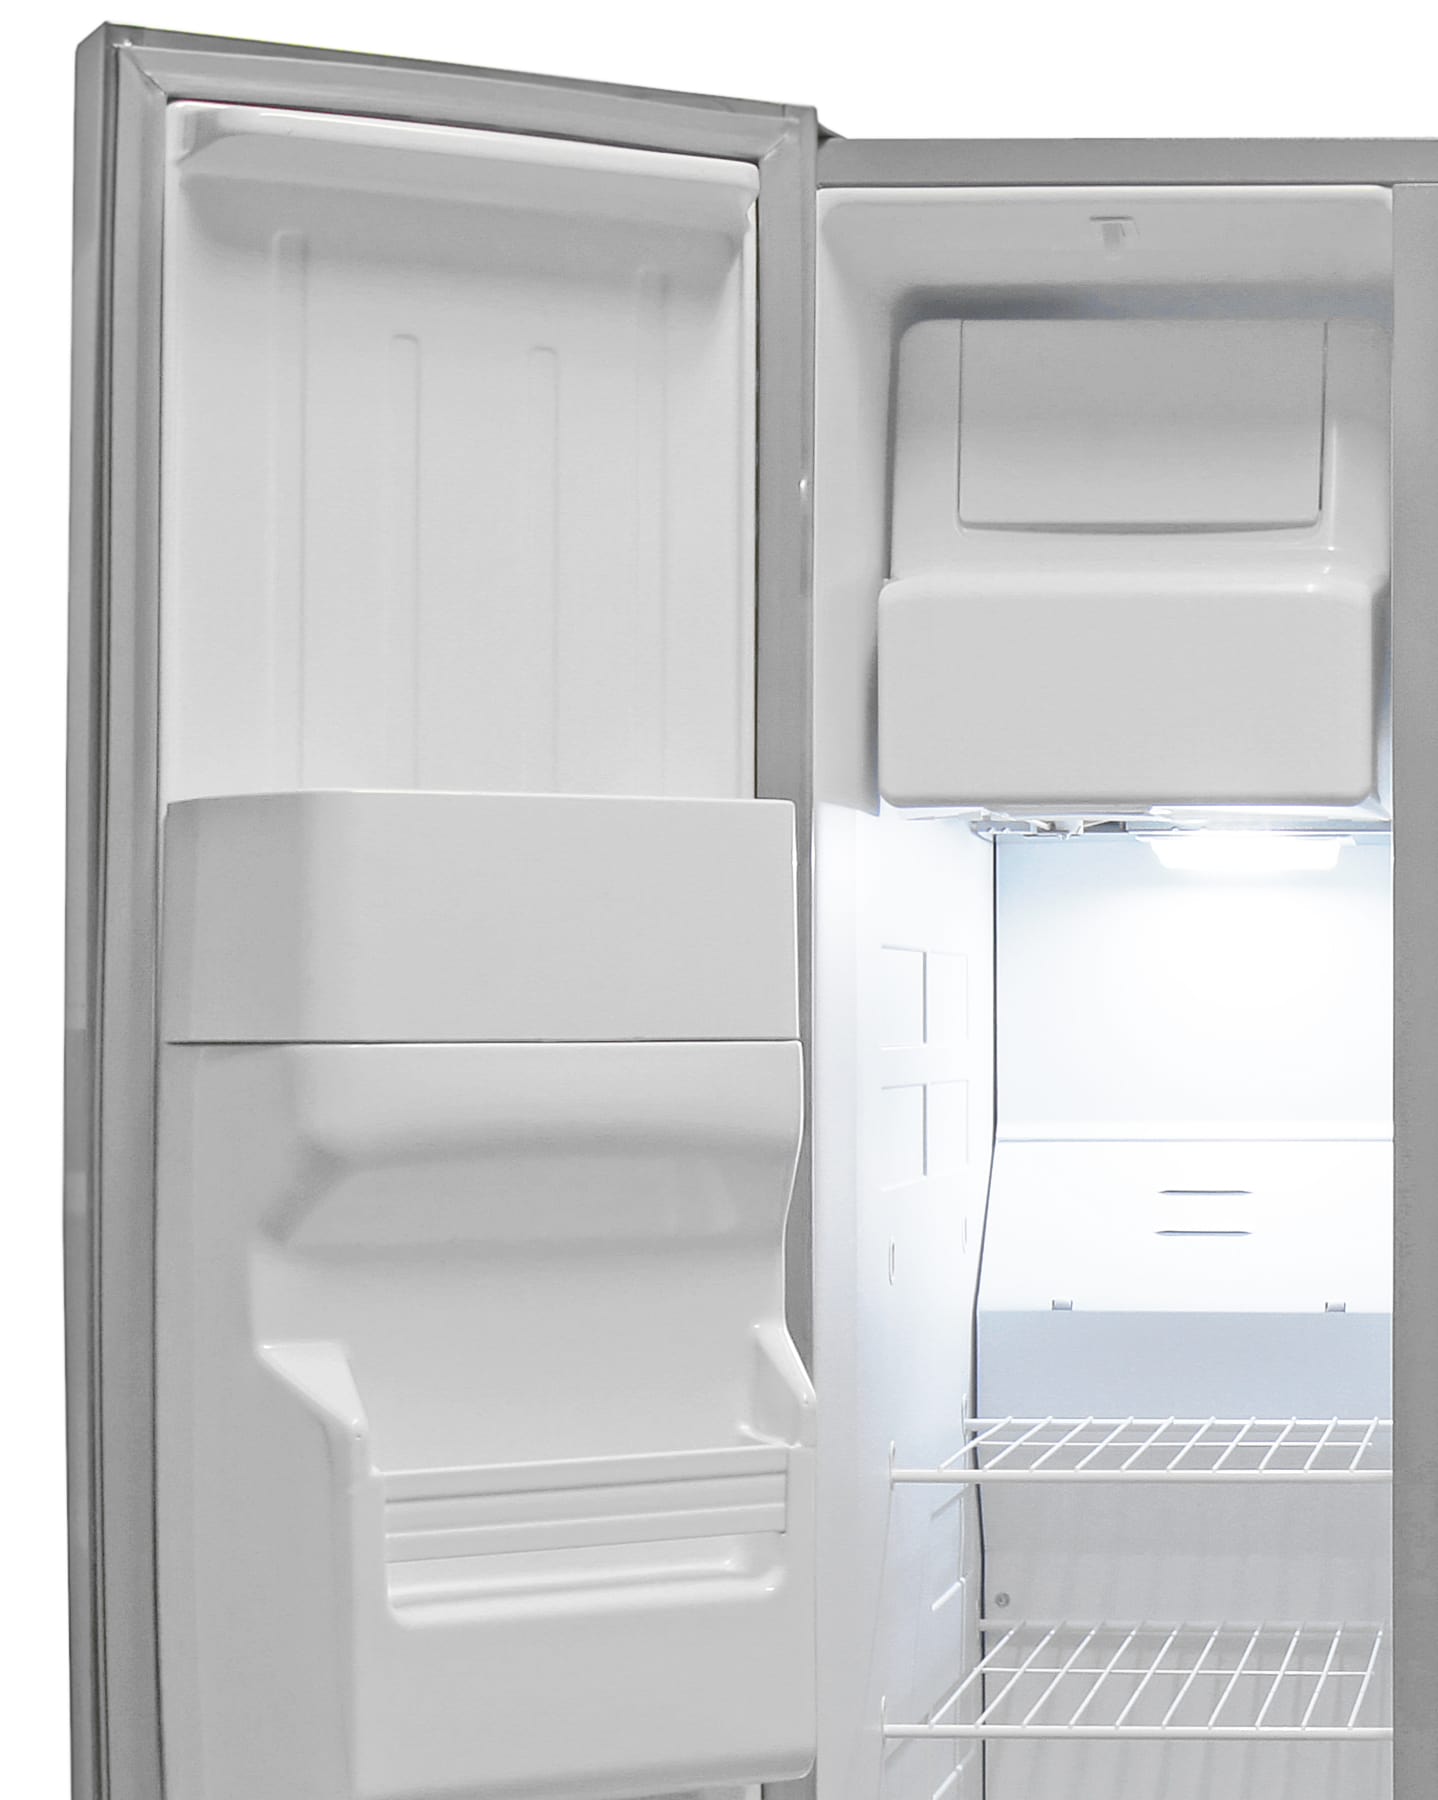 Whirlpool WRS325FDAM Refrigerator Review - Reviewed.com Refrigerators